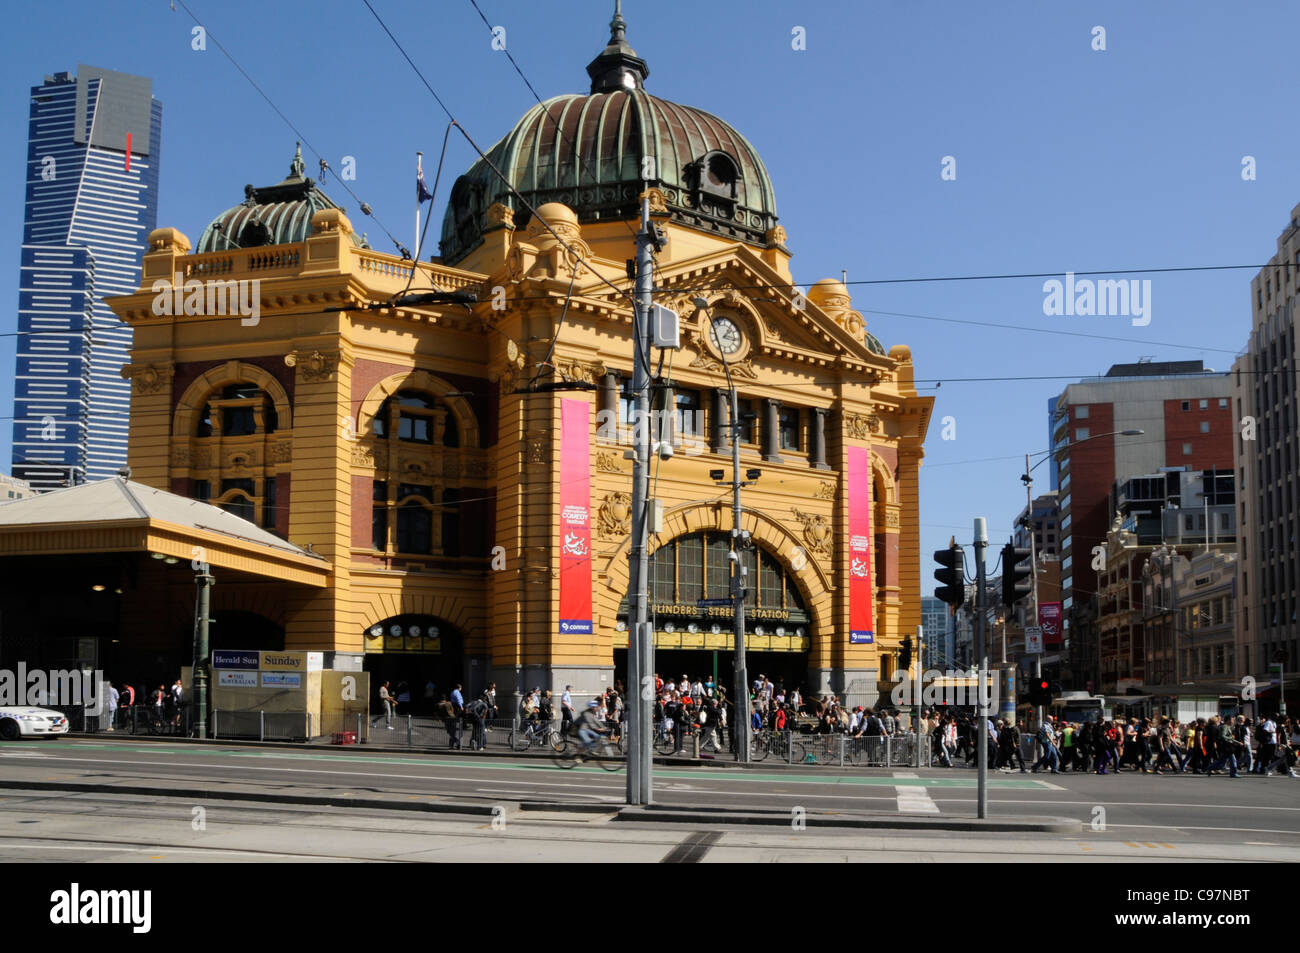 La stazione ferroviaria principale di Flinders Street a Melbourne, in Australia, è di un'architettura rinascimentale francese. L'architettura era popolare in Europa e t Foto Stock